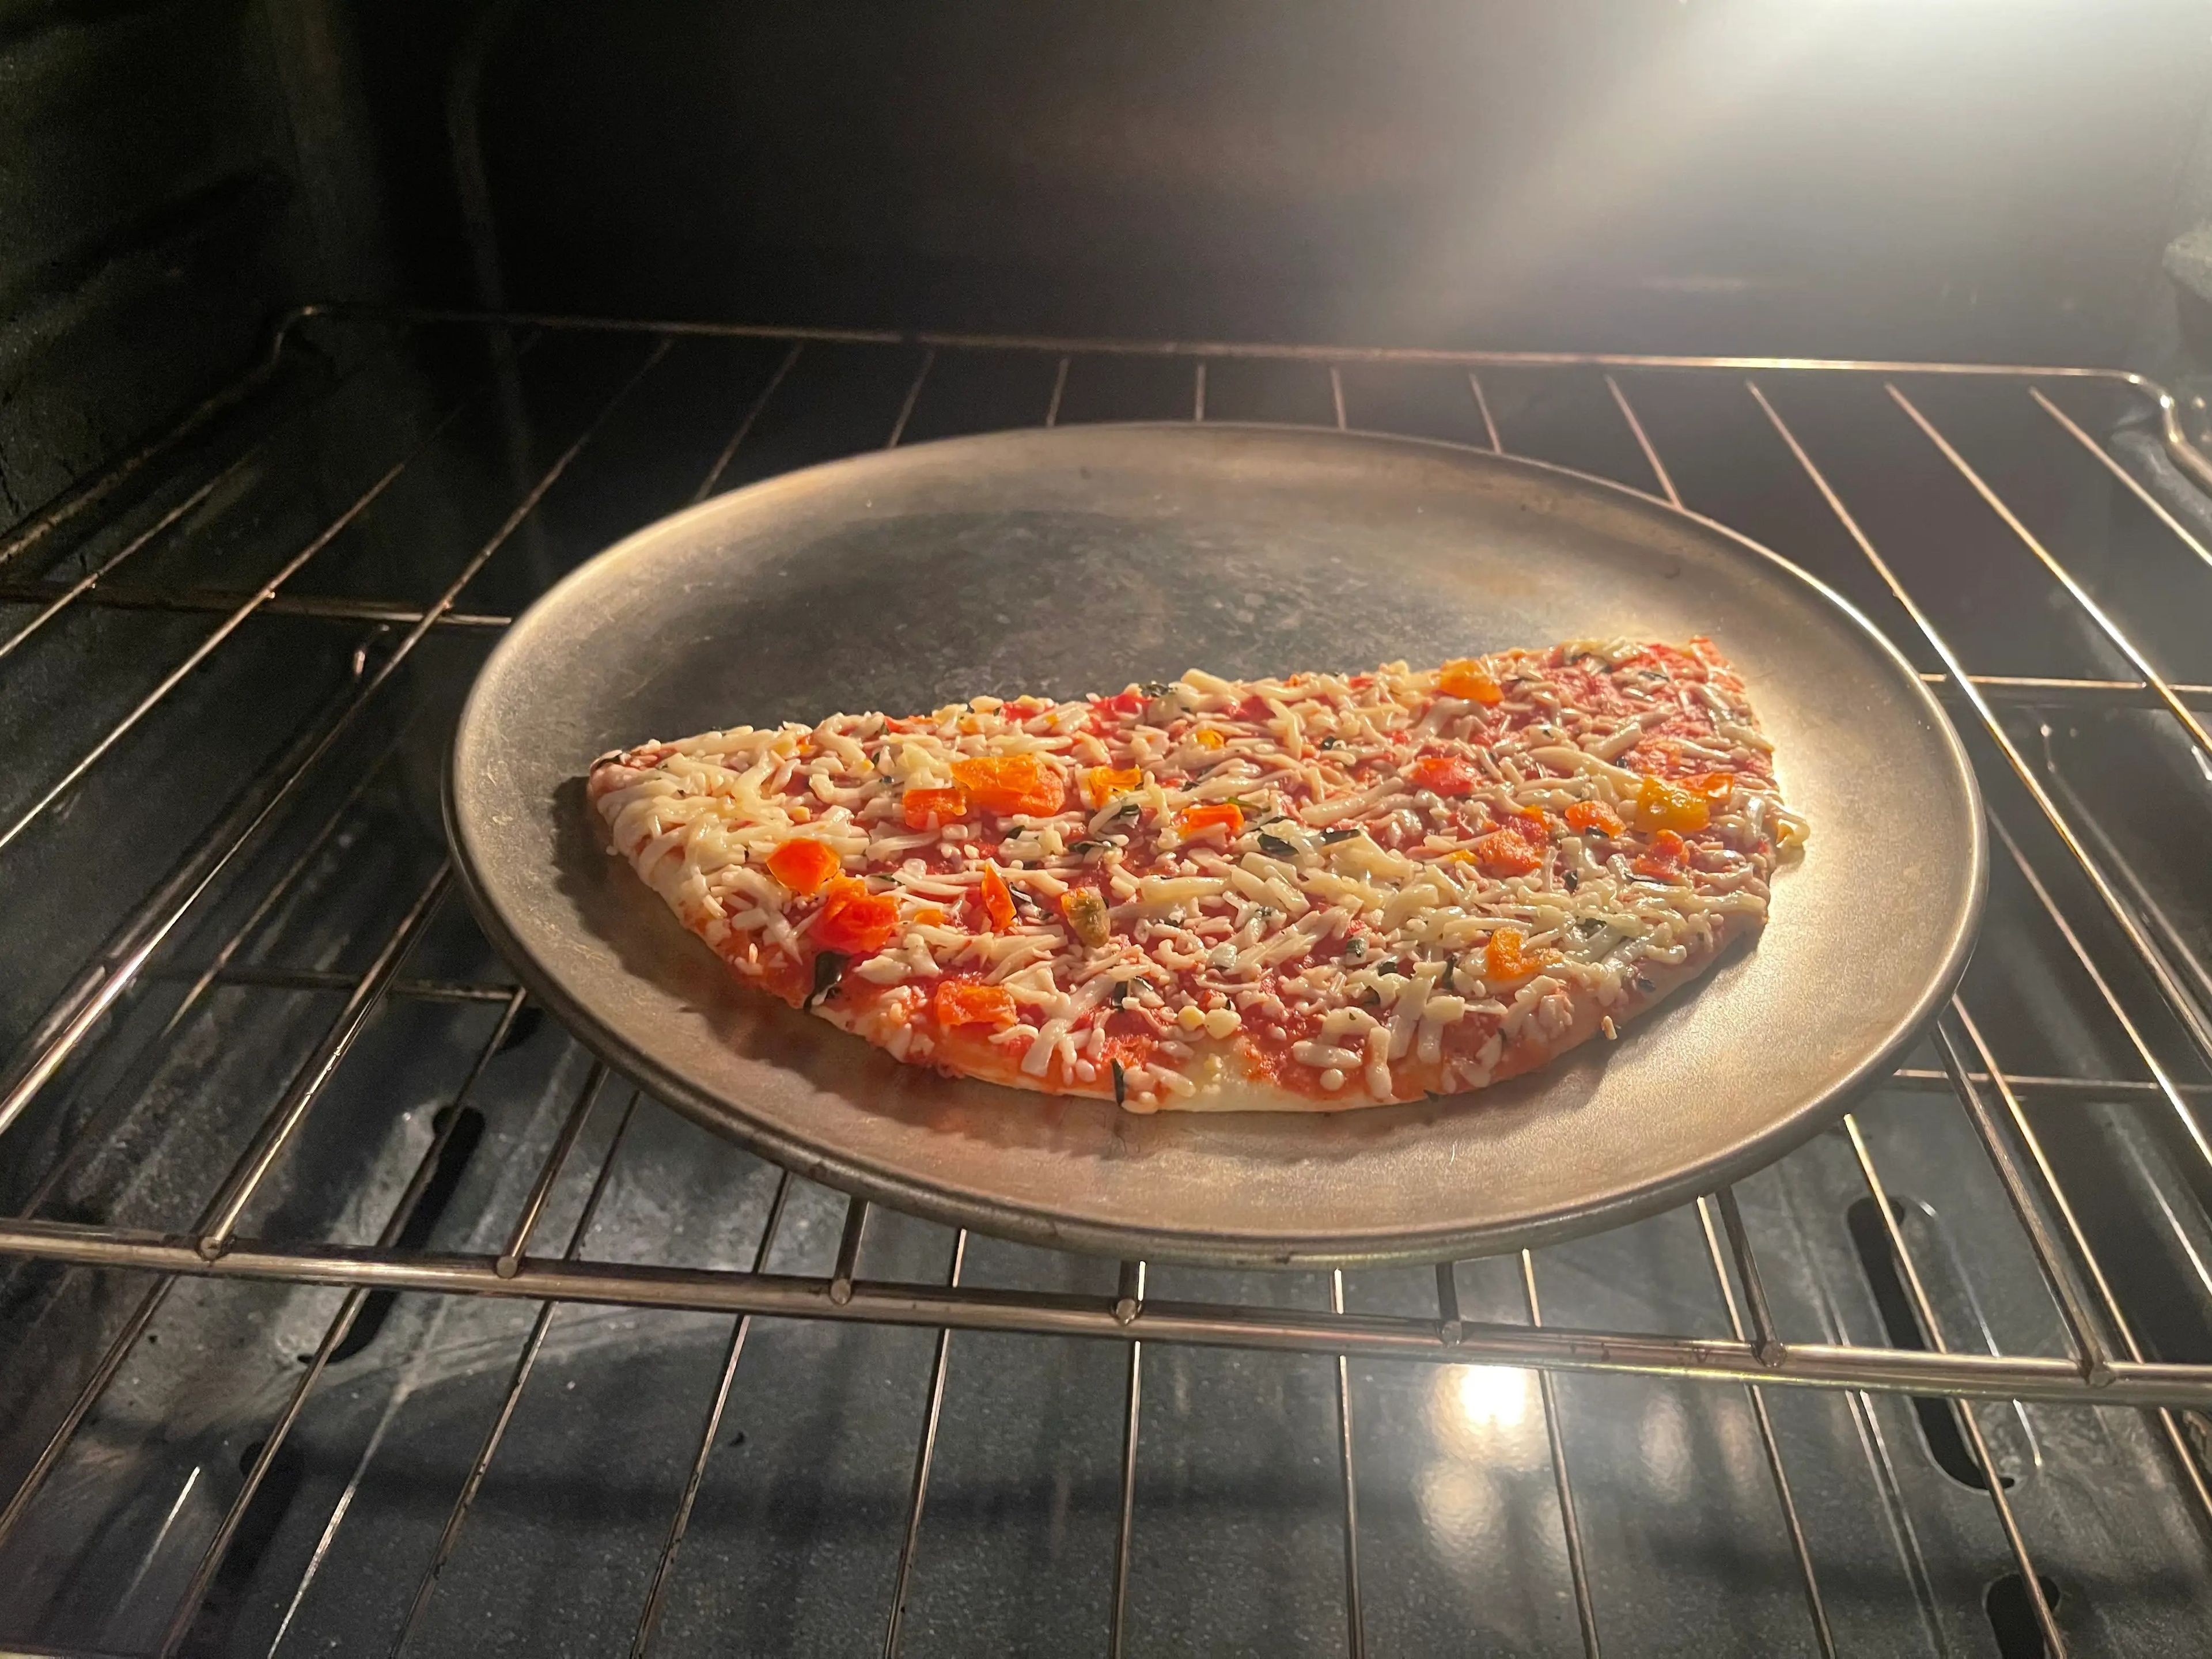 Coloqué la pizza en una bandeja y la metí en el horno.